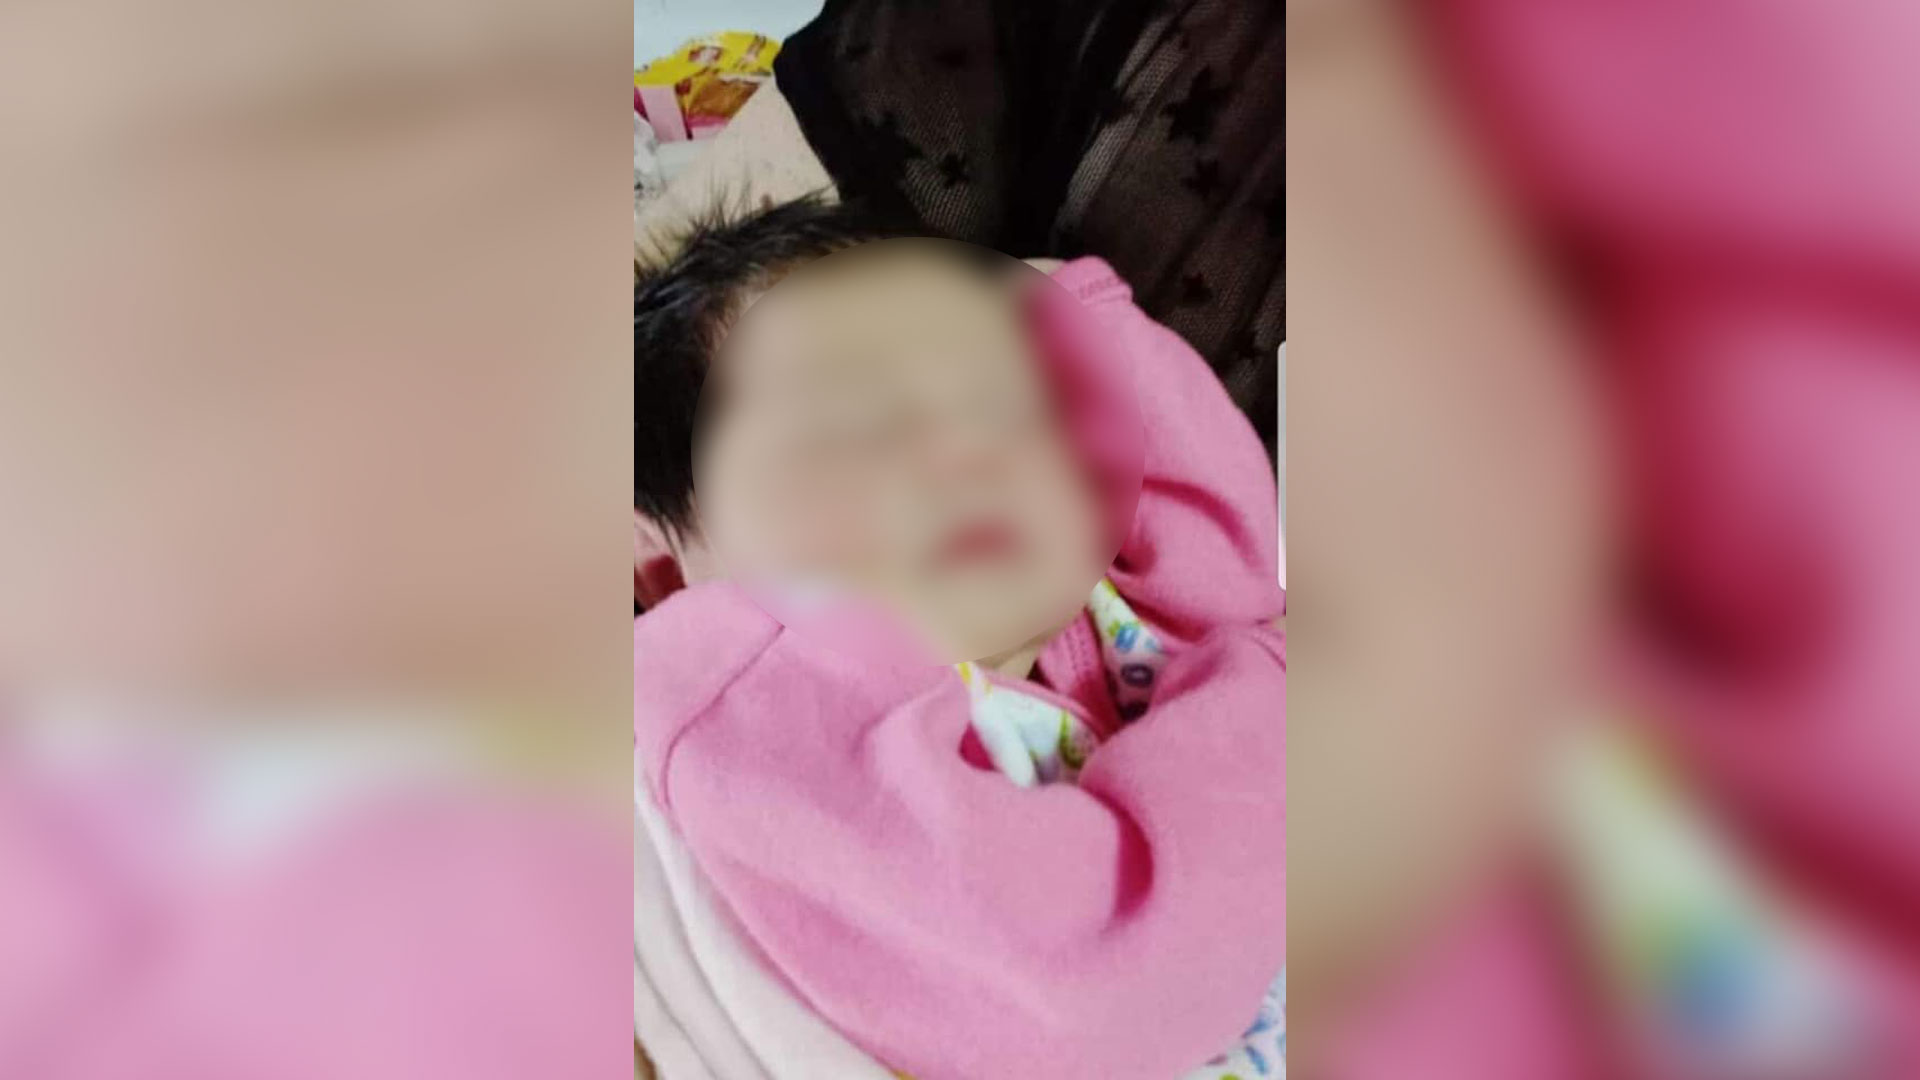 Aimara, the baby that was stolen